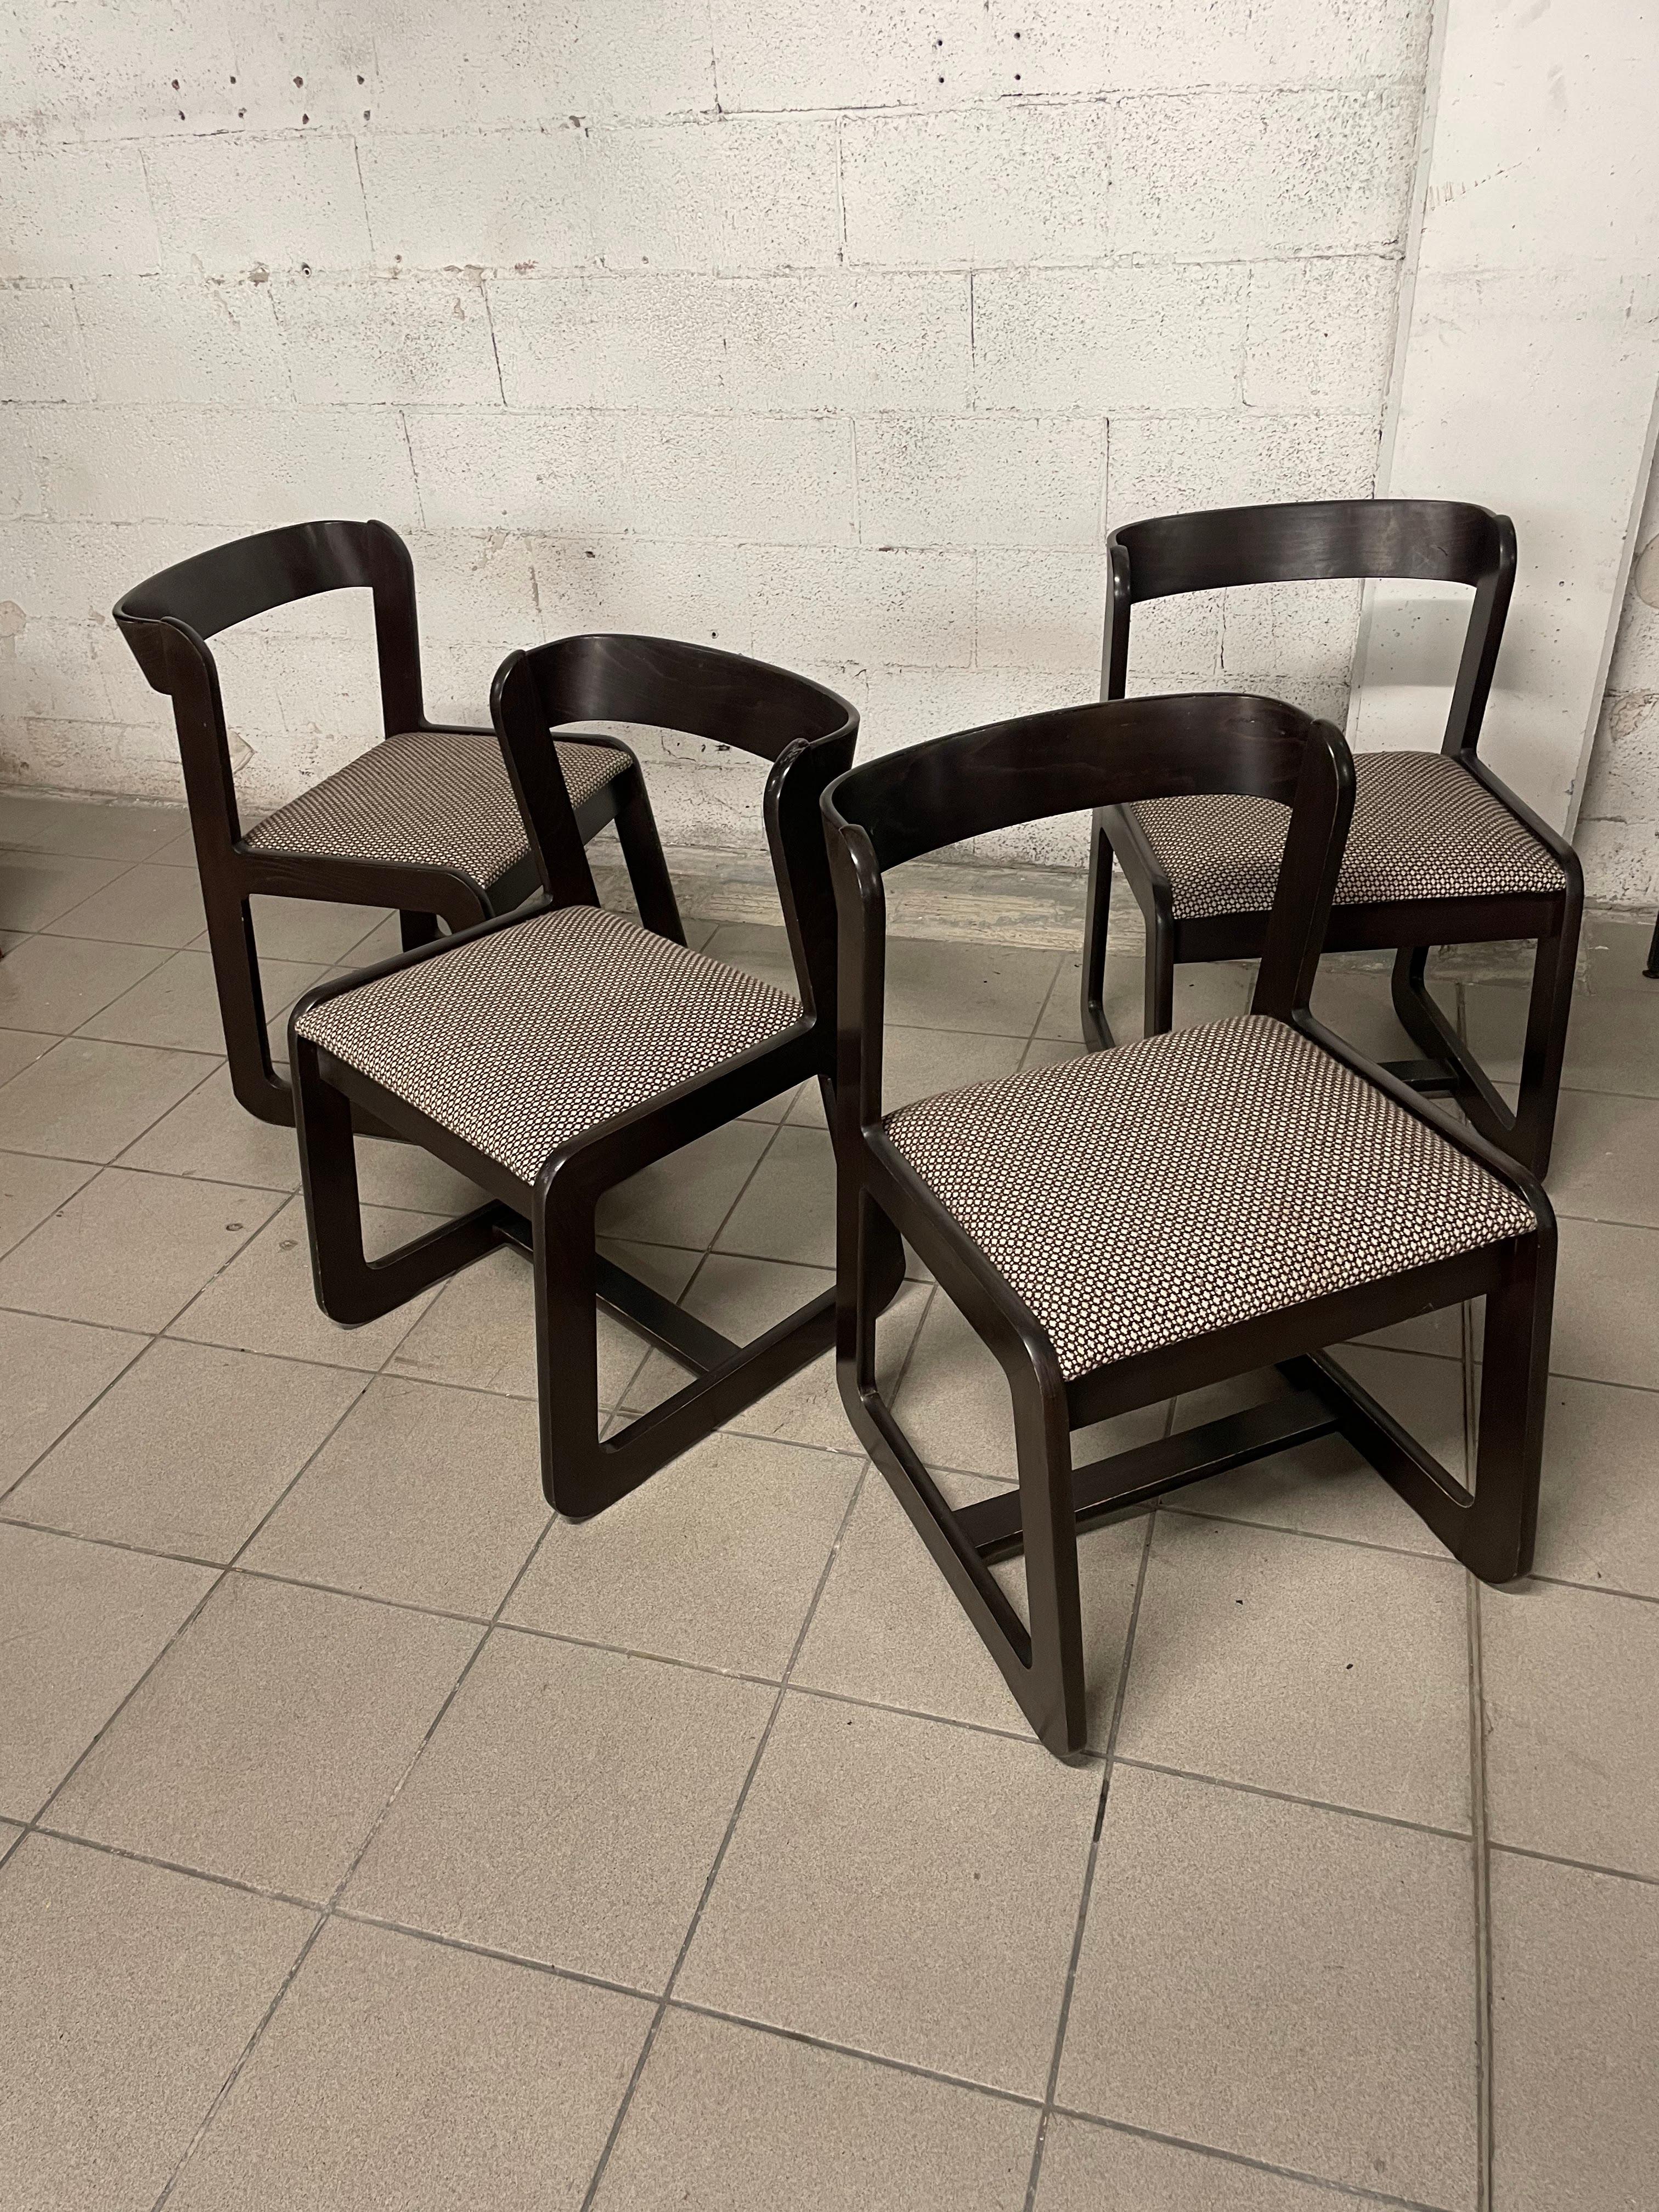 Set di quattro sedie in faggio tinto degli anni '70 nello stile di Willy Rizzo per Mario Sabot.

La particolarità del design è data dallo schienale in legno curvato che dona a queste sedute una linea morbida e sempre attuale.

Le condizioni del set